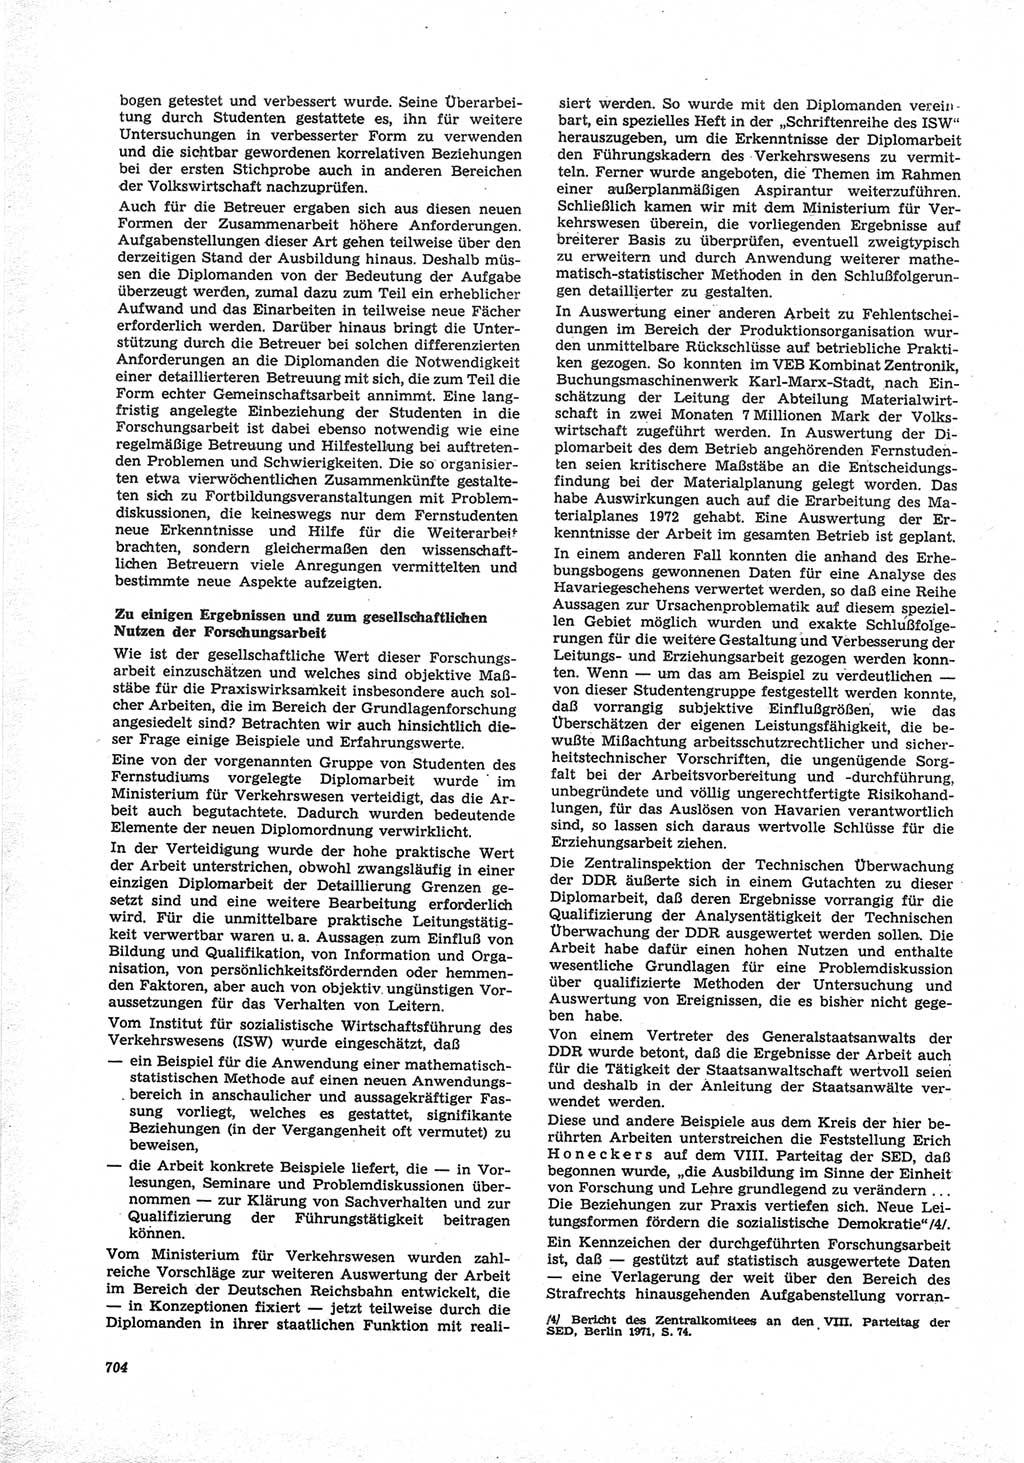 Neue Justiz (NJ), Zeitschrift für Recht und Rechtswissenschaft [Deutsche Demokratische Republik (DDR)], 25. Jahrgang 1971, Seite 704 (NJ DDR 1971, S. 704)